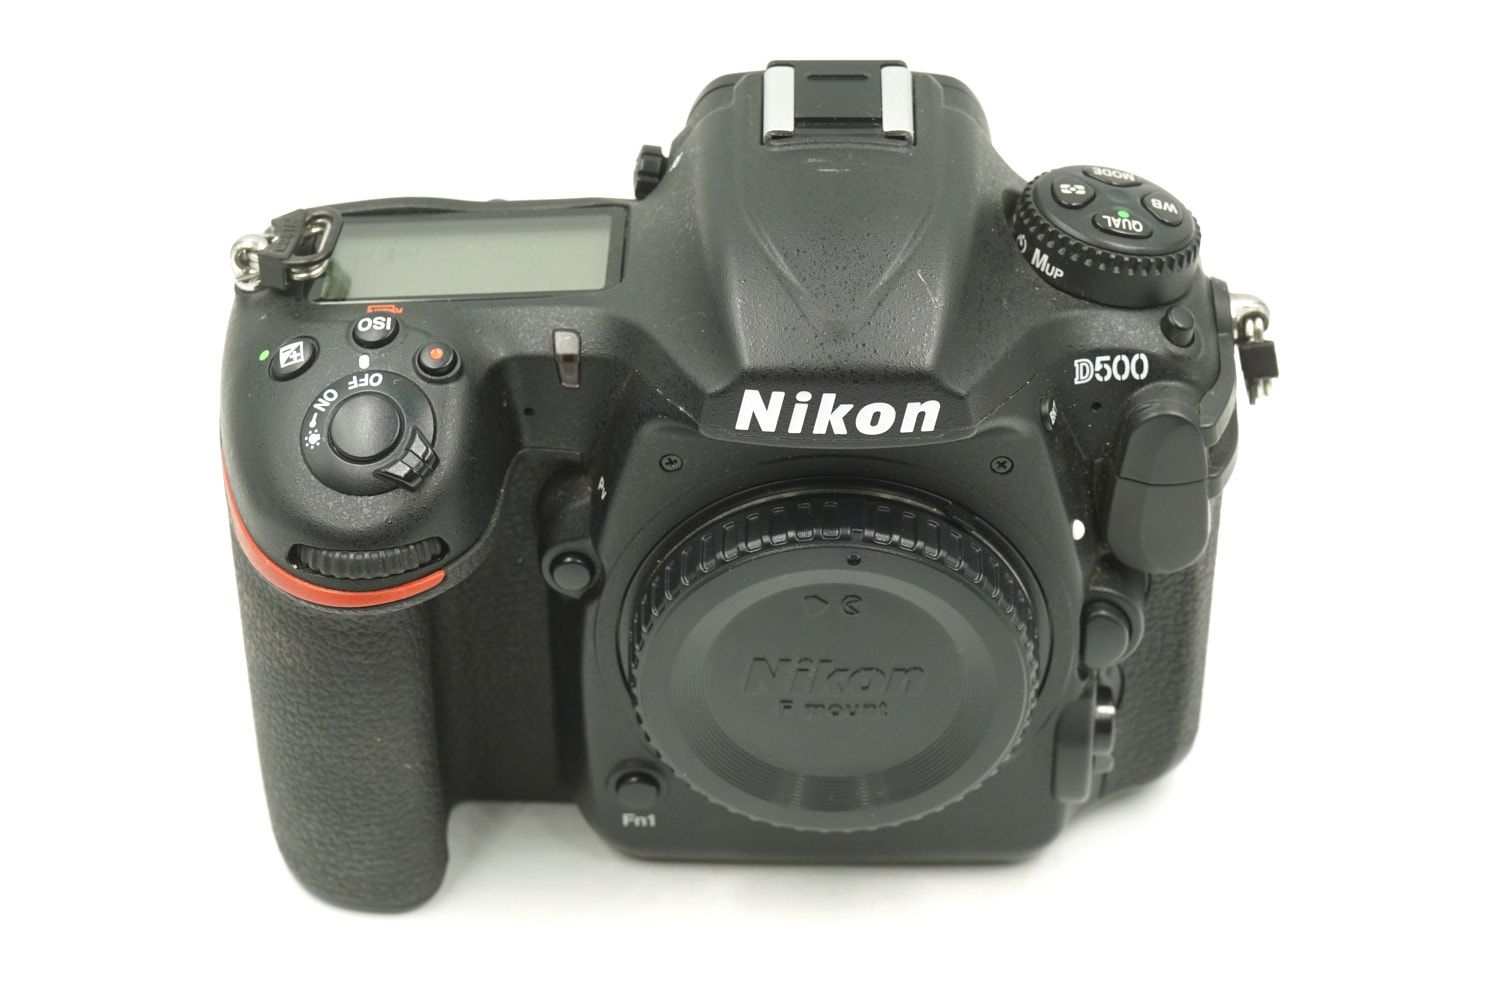 Nikon D500 ボディ - カメラ